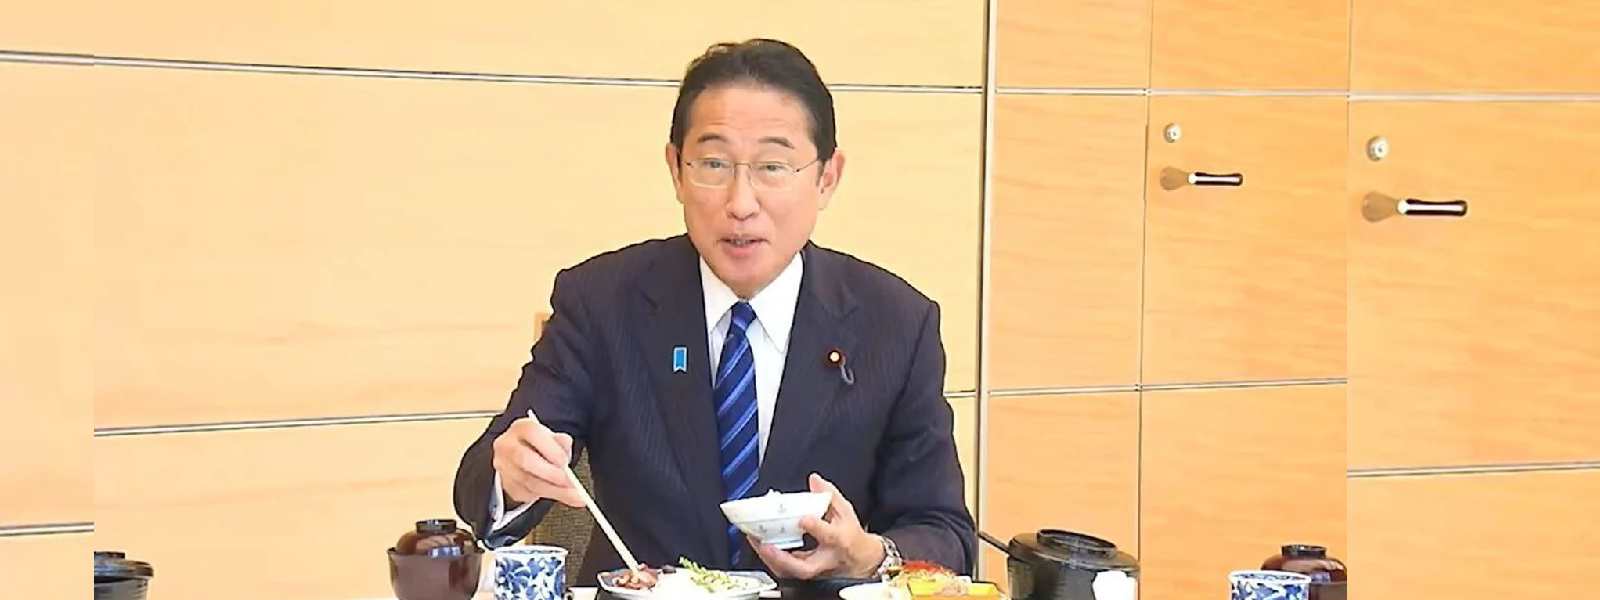 'Safe & delicious': Japan's PM eats Fukushima fish